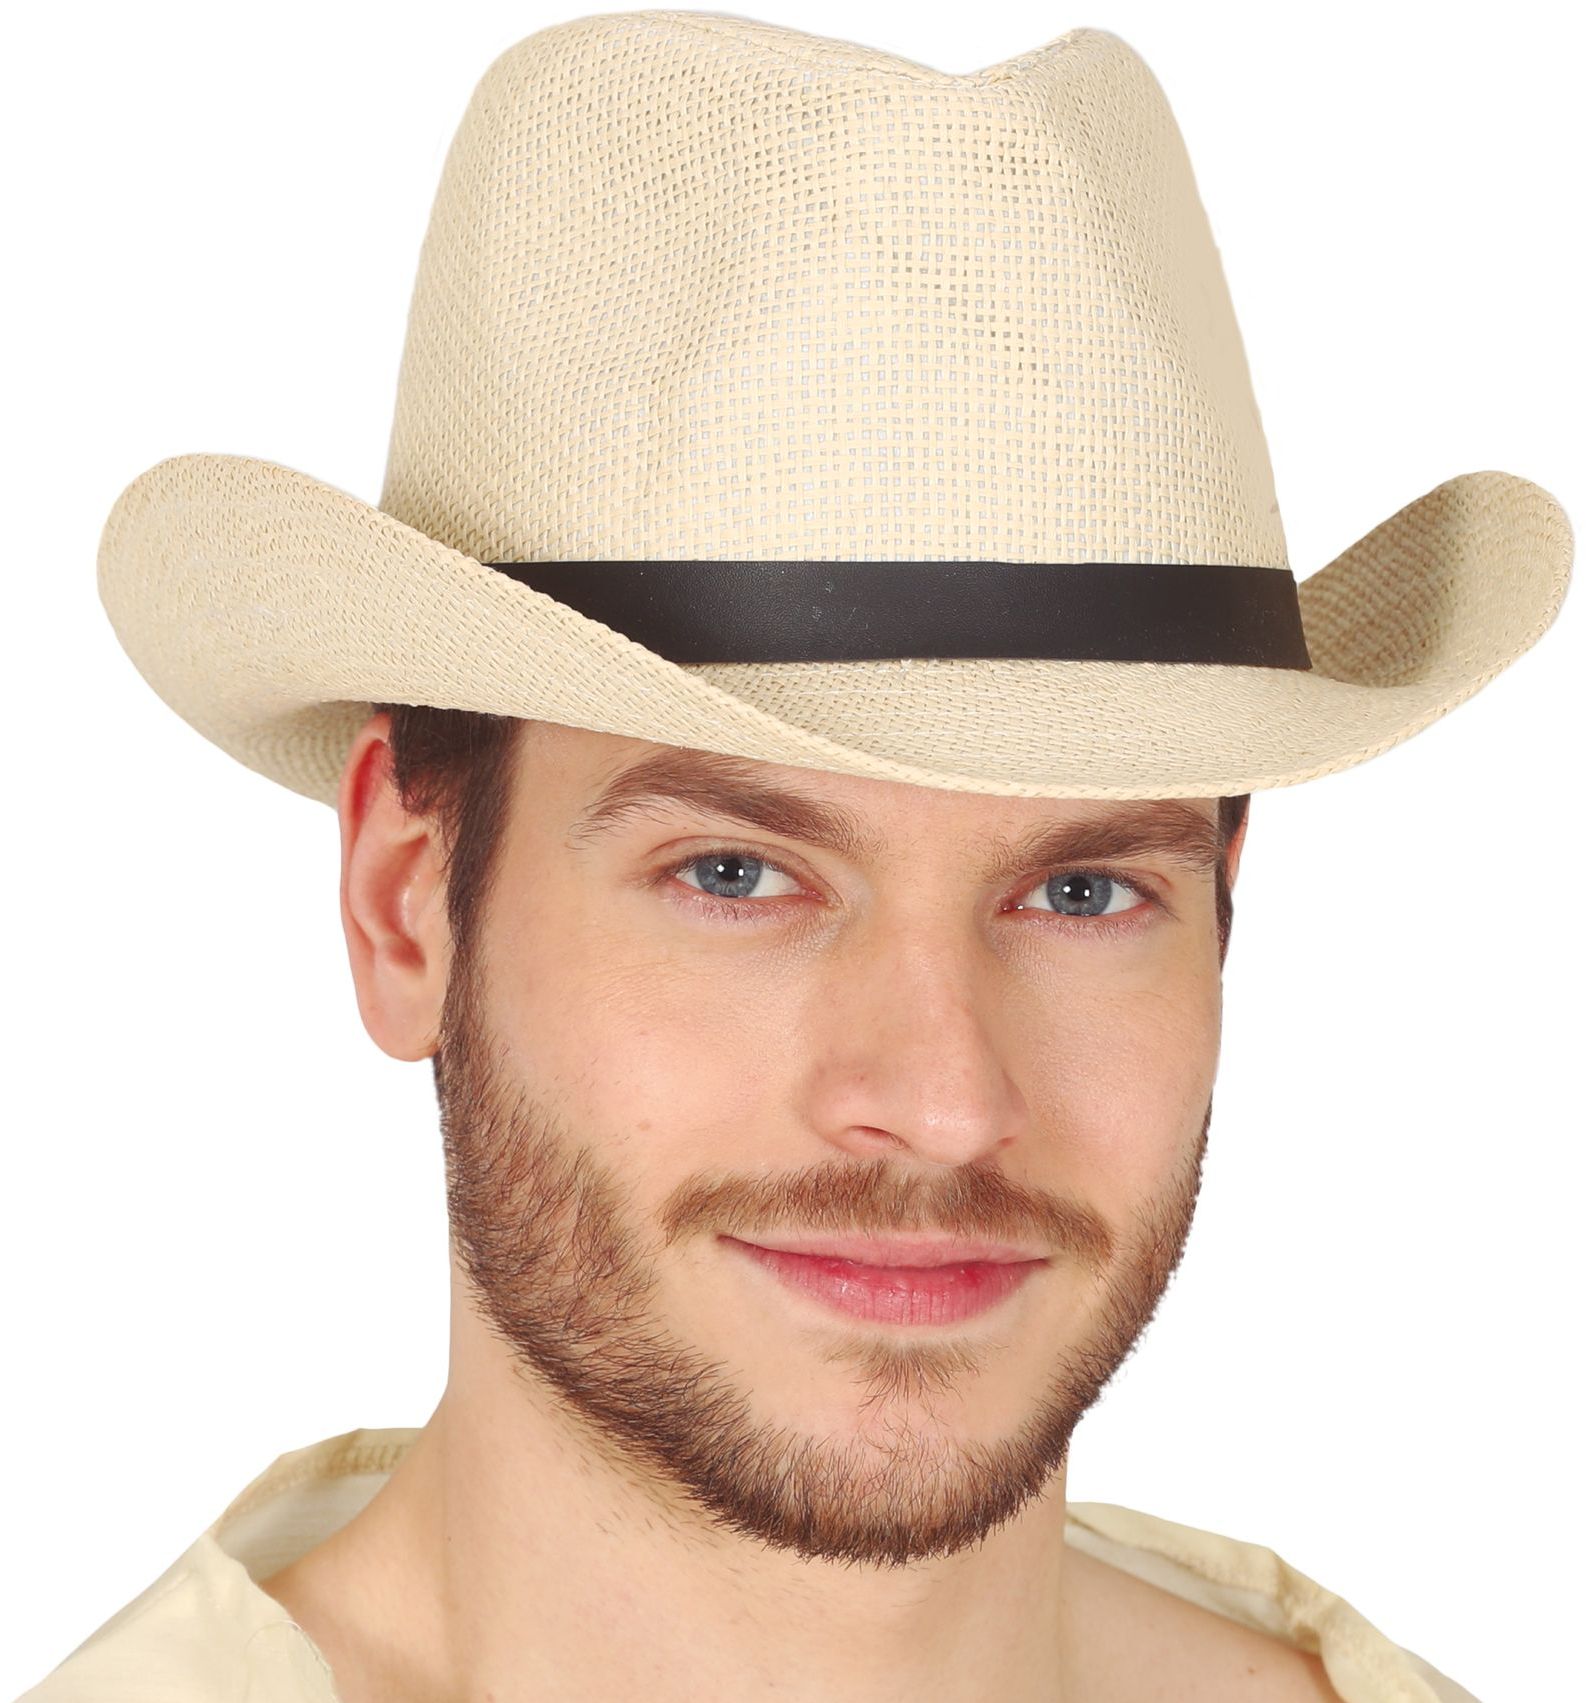 Western cowboy hoed beige